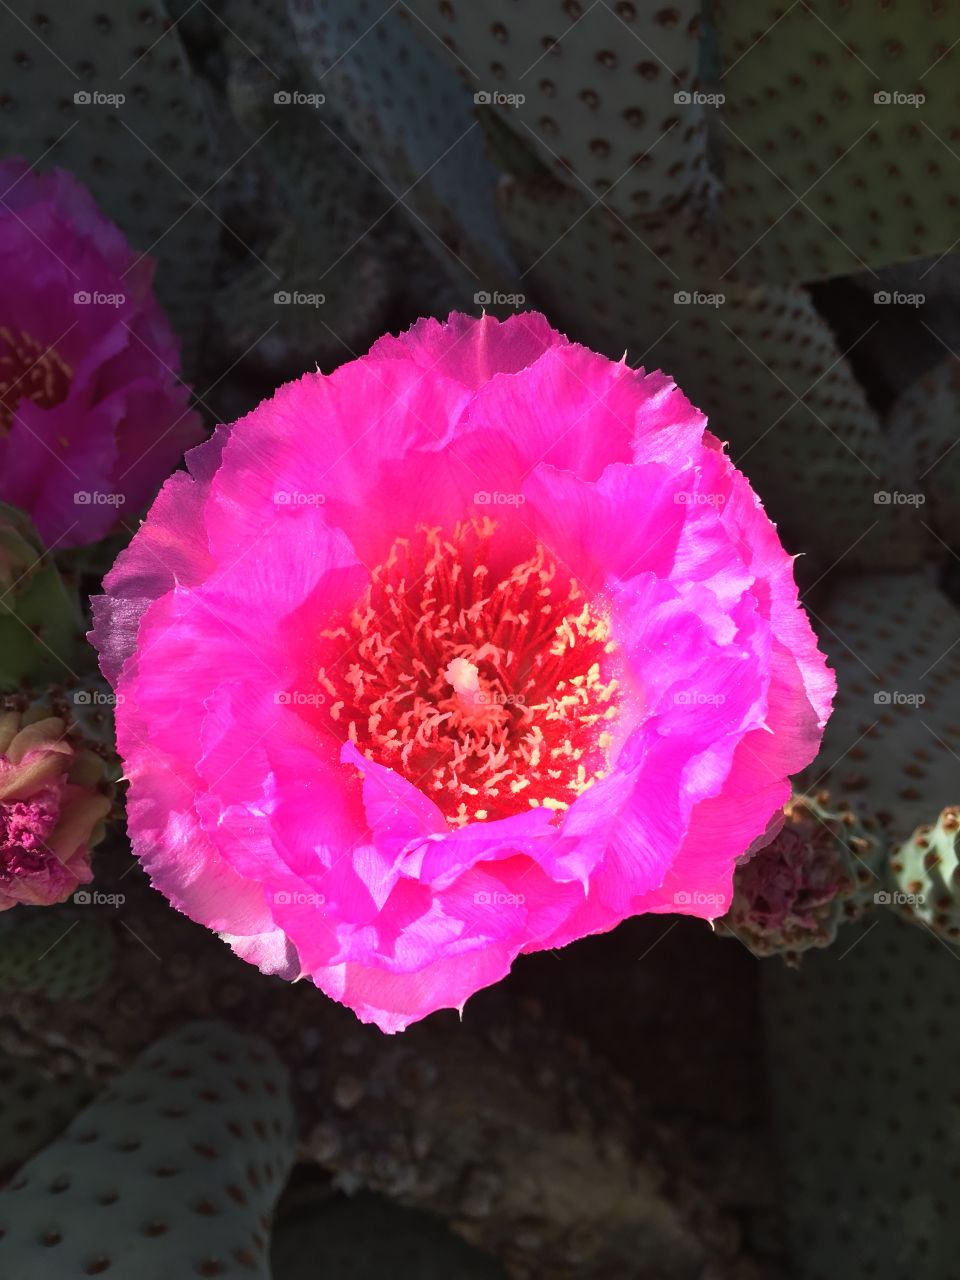 Hedgehog Cactus in Bloom, Arizona 